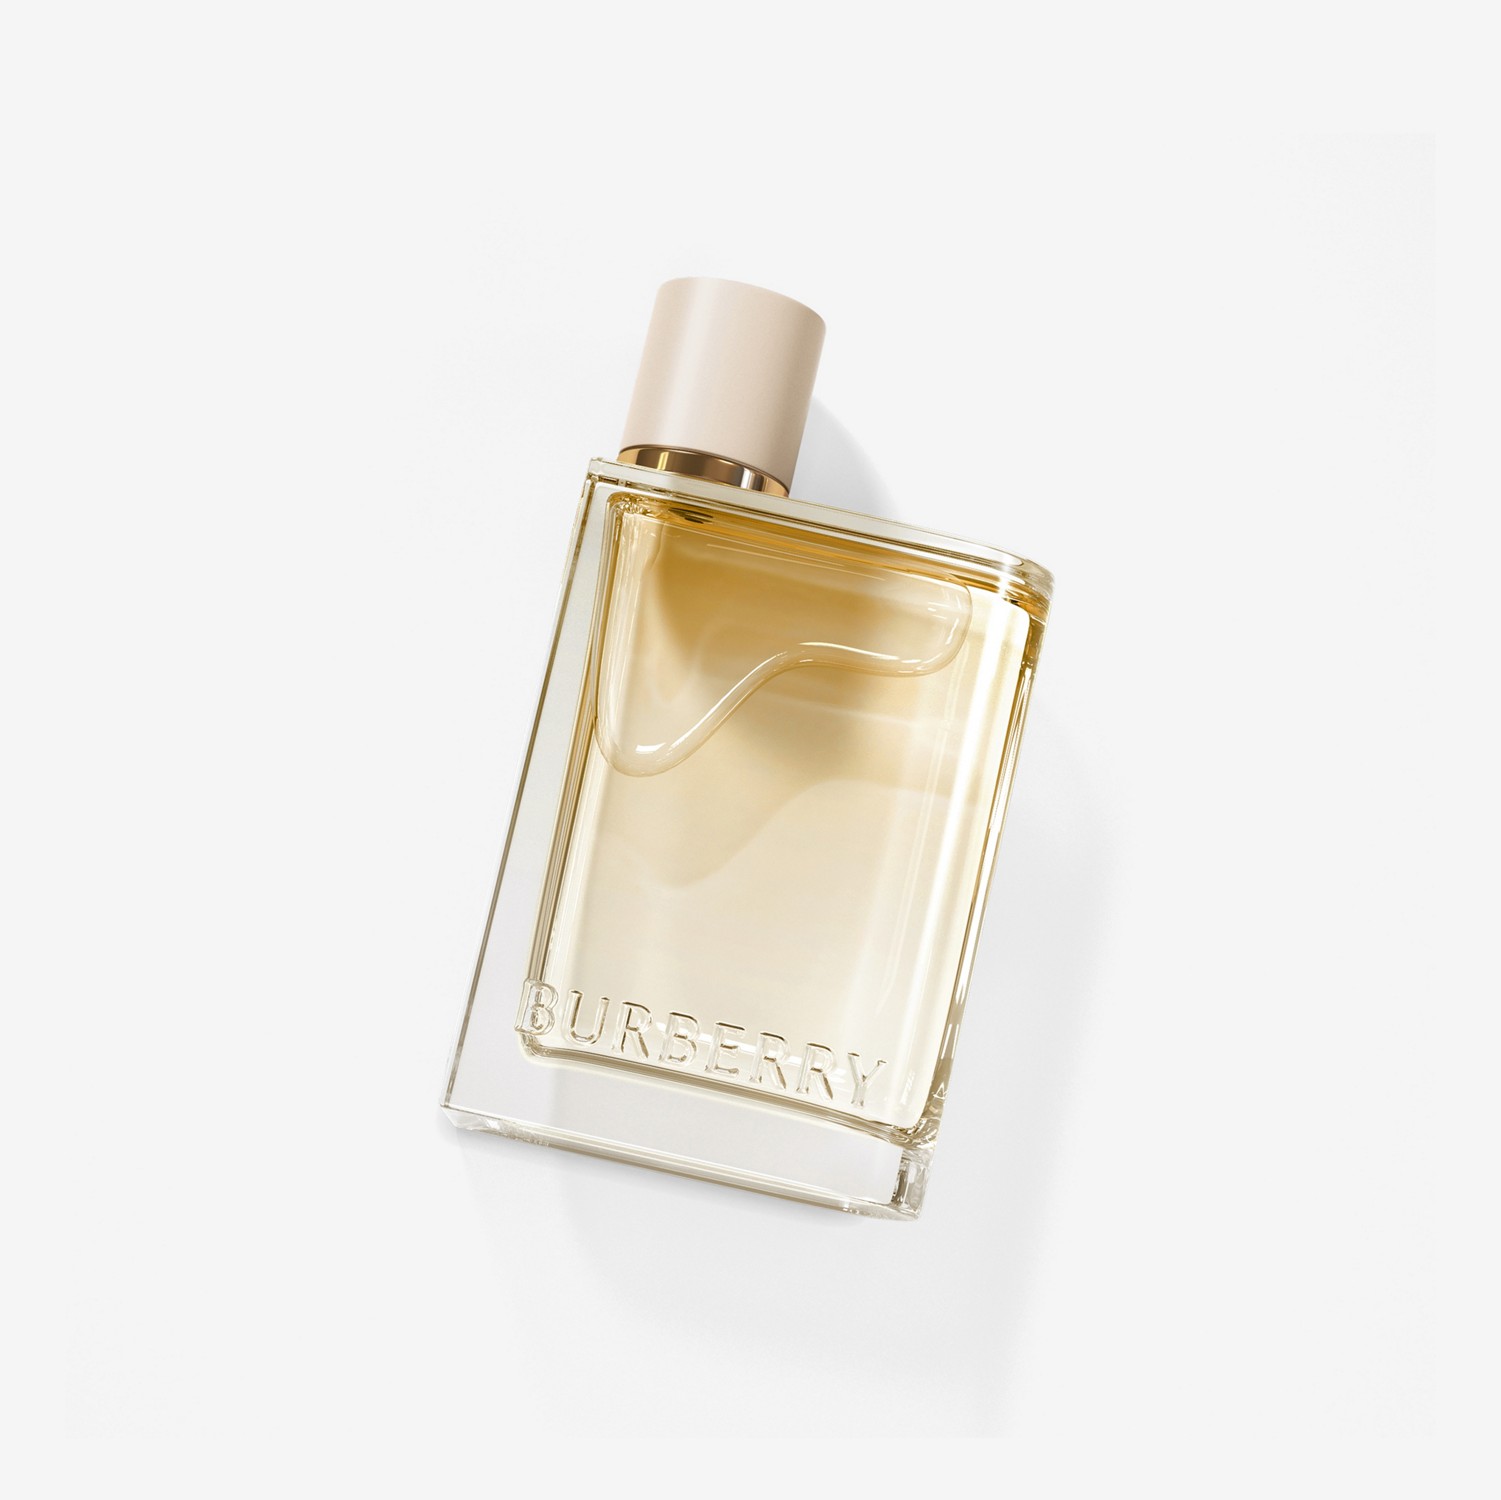 Her London Dream Eau de Parfum de 100 ml (100ml) - Mujer | Burberry® oficial